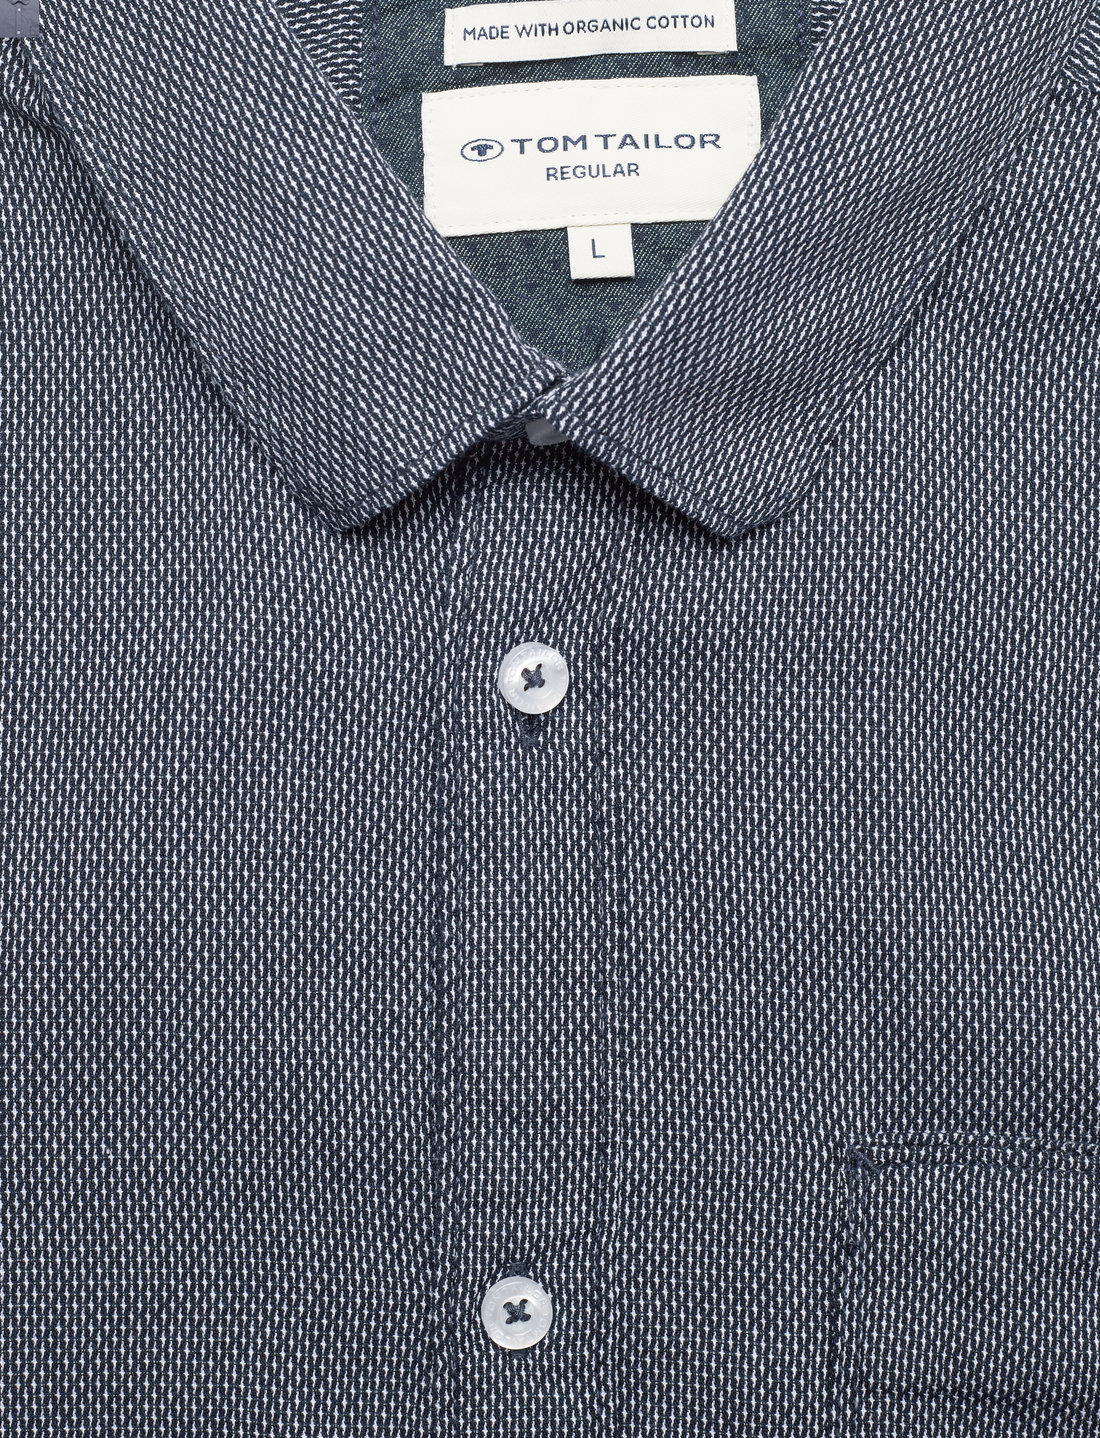 Tom Tailor Structured Shirt - Hemden - Booztlet.com Österreich